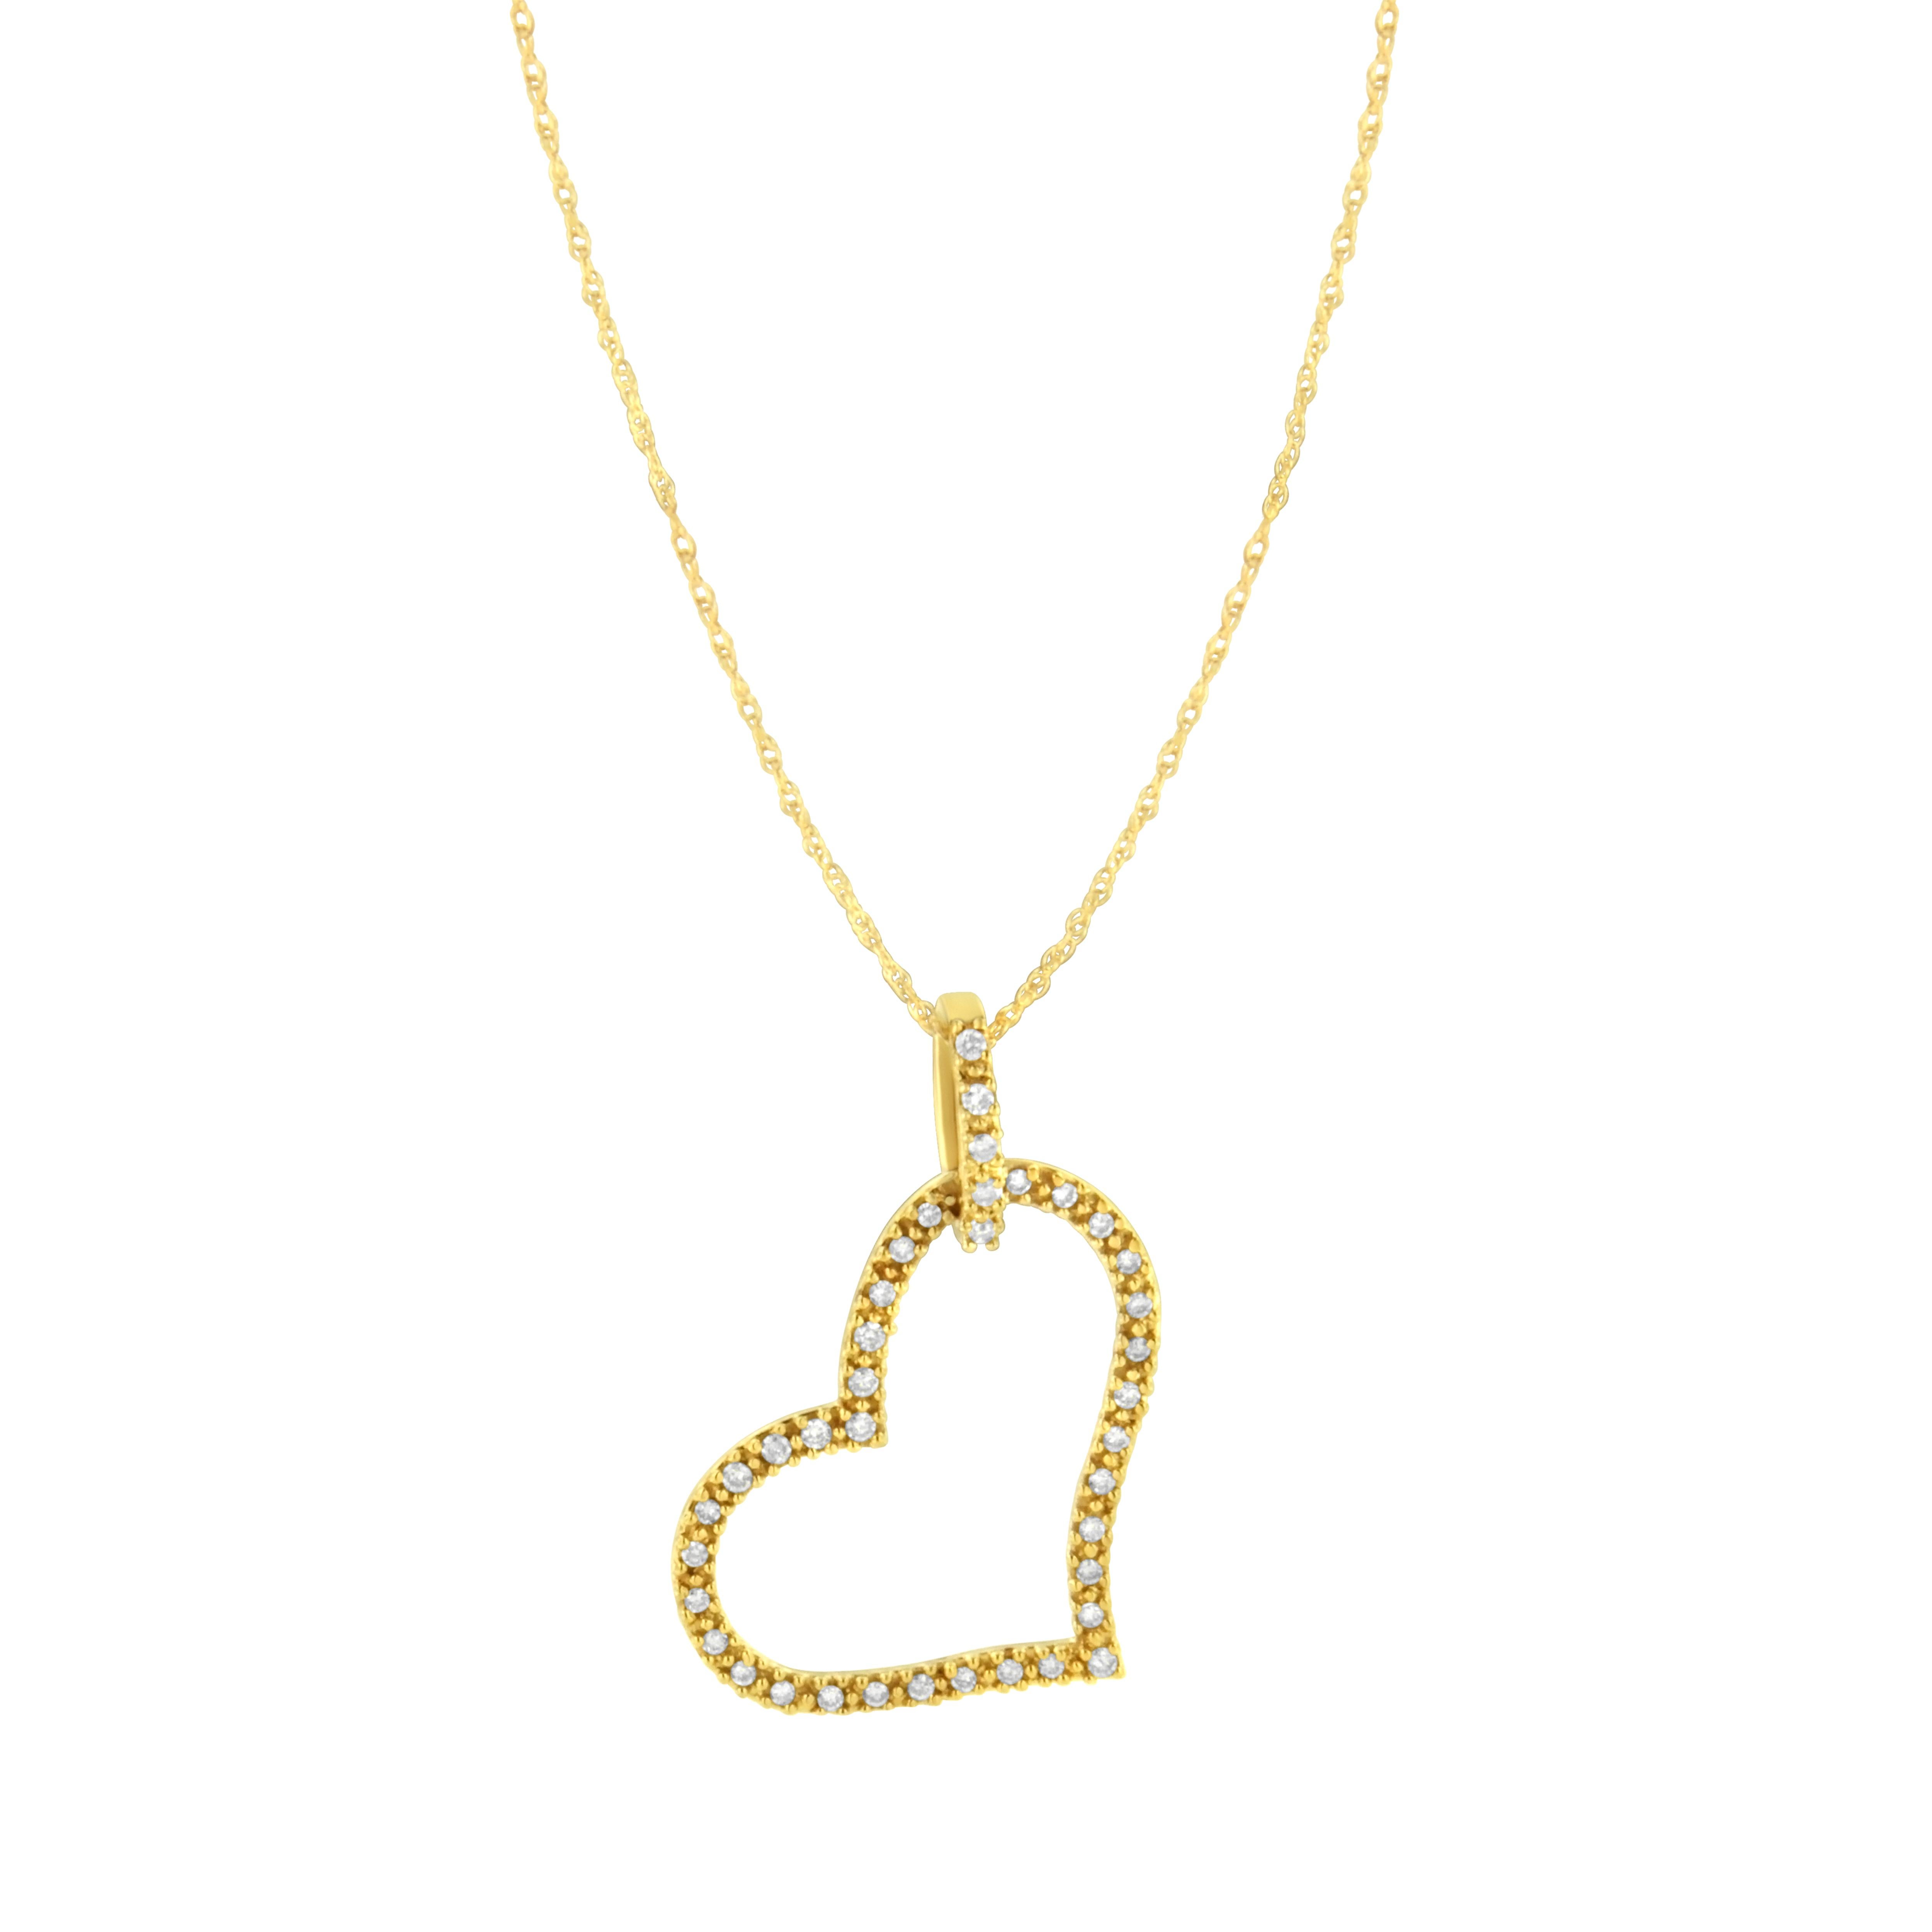 Ce pendentif en forme de cœur en diamant est un cadeau charmant pour votre cœur. Le charmant cœur en or jaune est suspendu de travers à une élégante boucle en or jaune et est orné de 39 diamants brillants de taille ronde magnifiquement sertis et